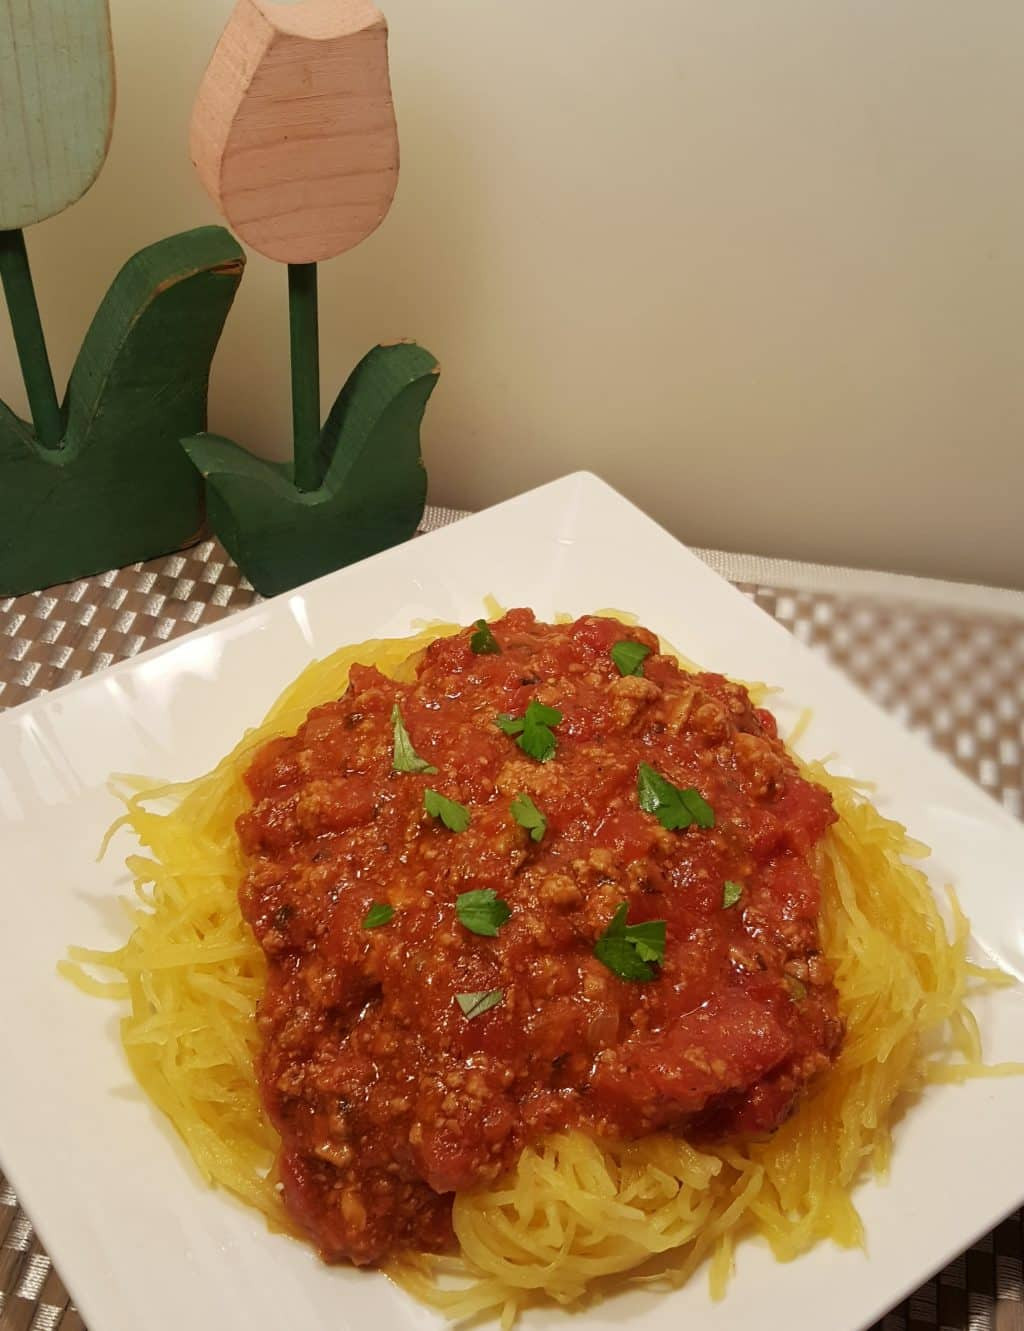 Spaghetti Squash In Pressure Cooker
 Instant Pot Pressure Cooker Spaghetti Squash and Meat